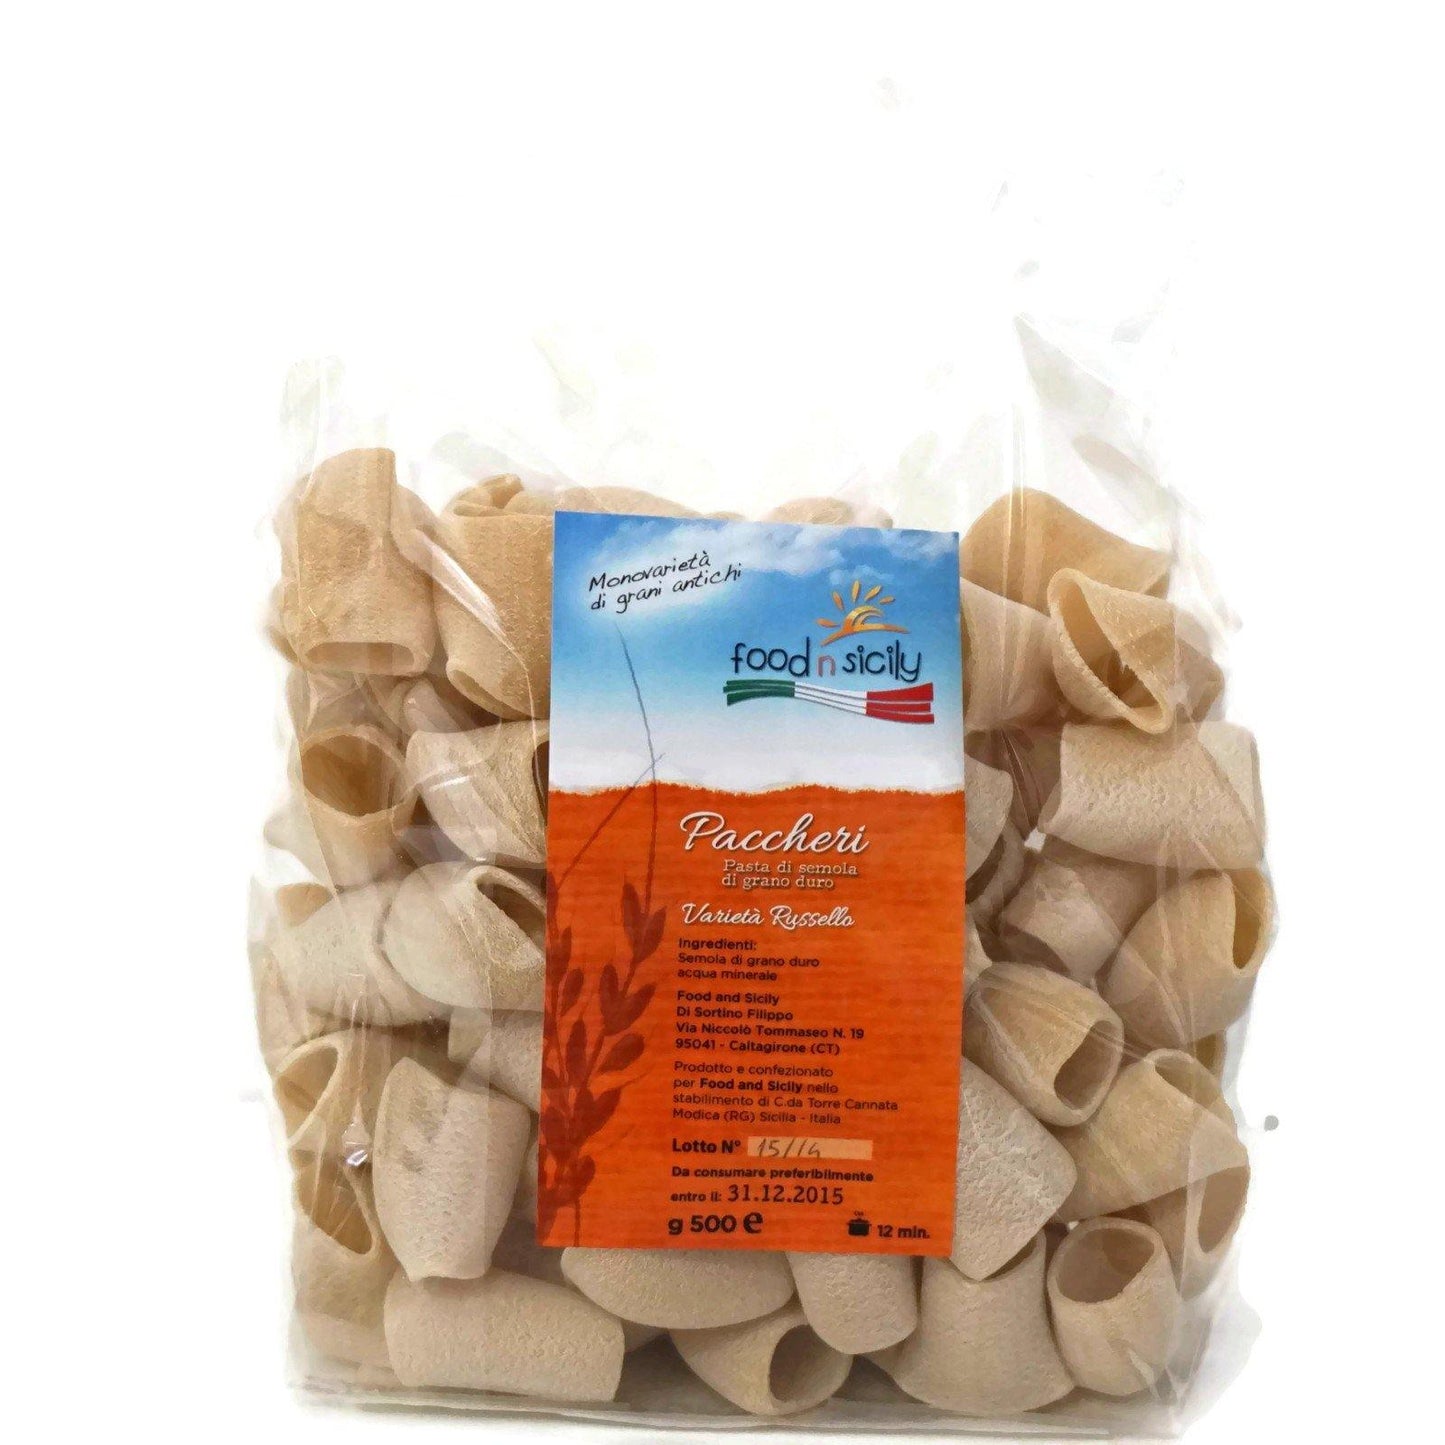 Pasta artigianale "Paccheri" trafilati al bronzo di grano duro Russello, 500 gr pasta Food in Sicily 